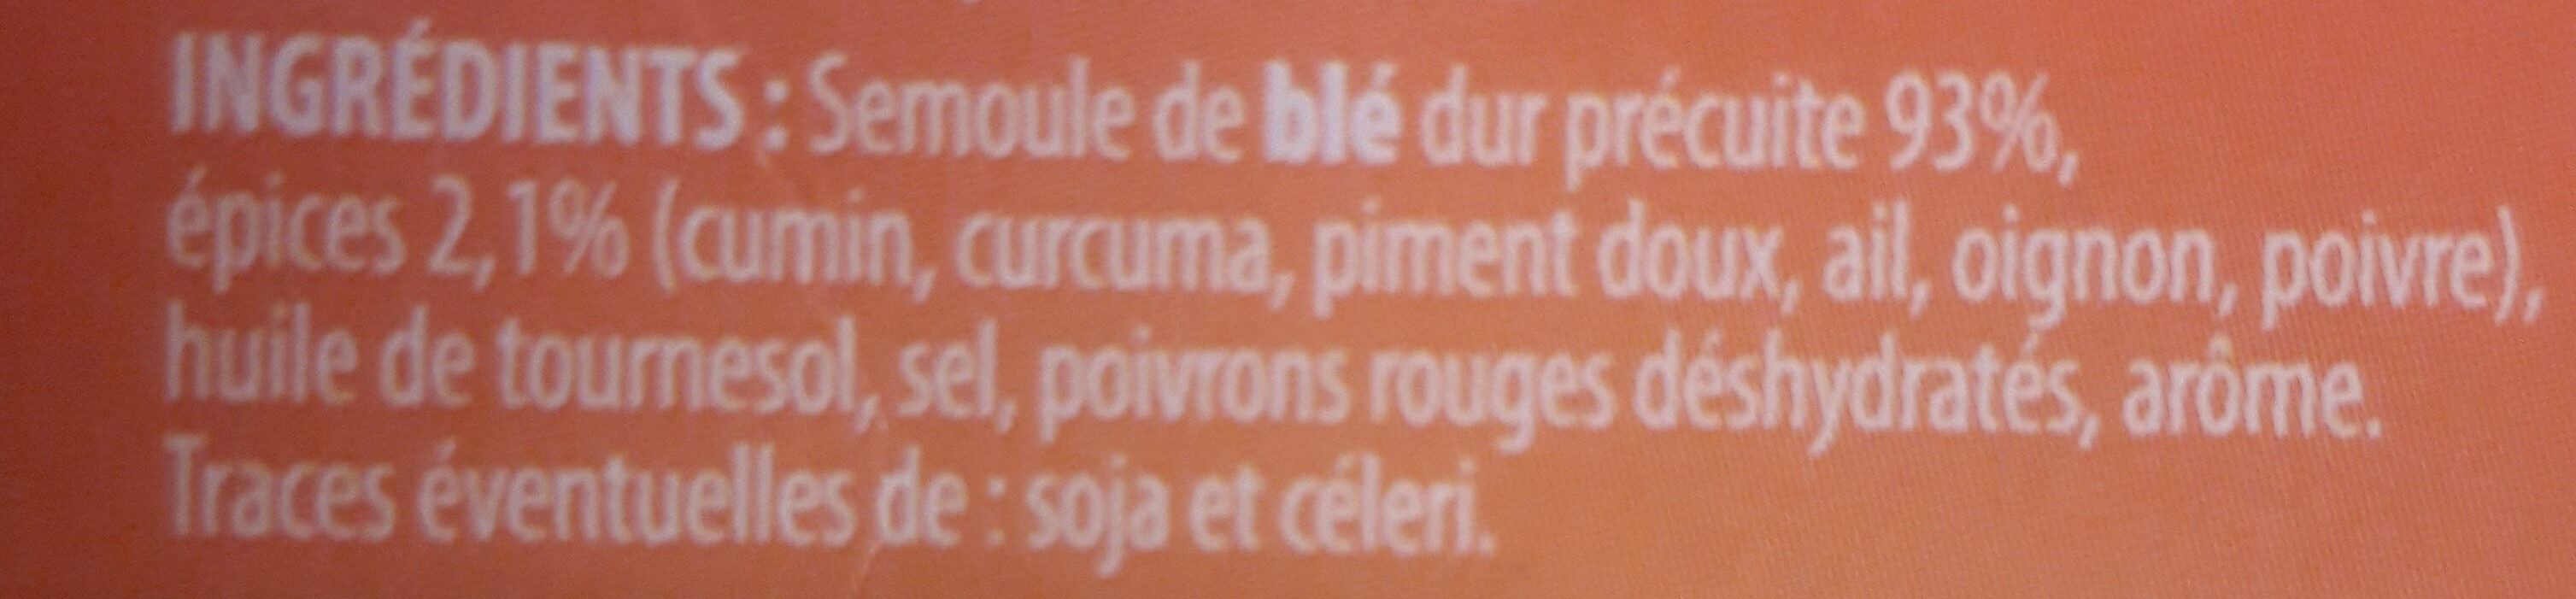 Couscous aux épices - Ingredientes - fr